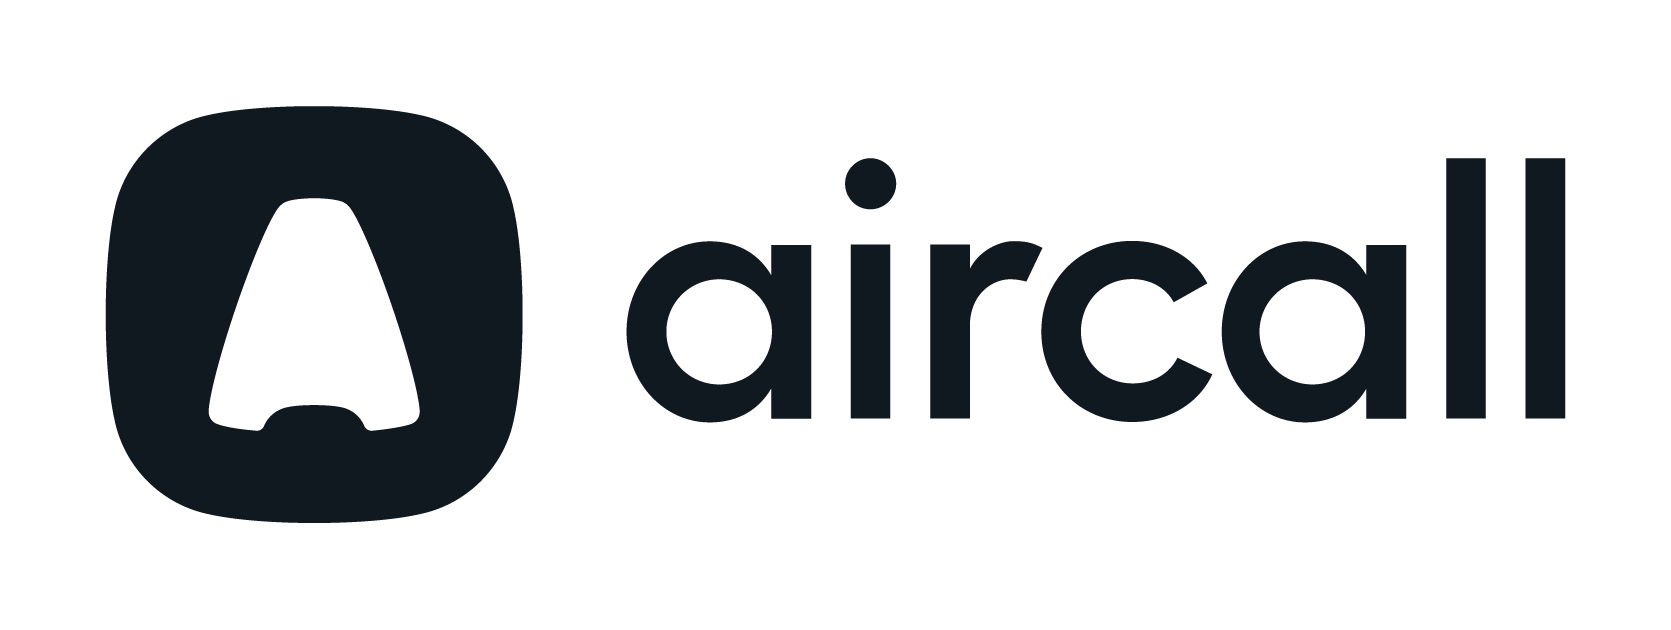 Aircallロゴ